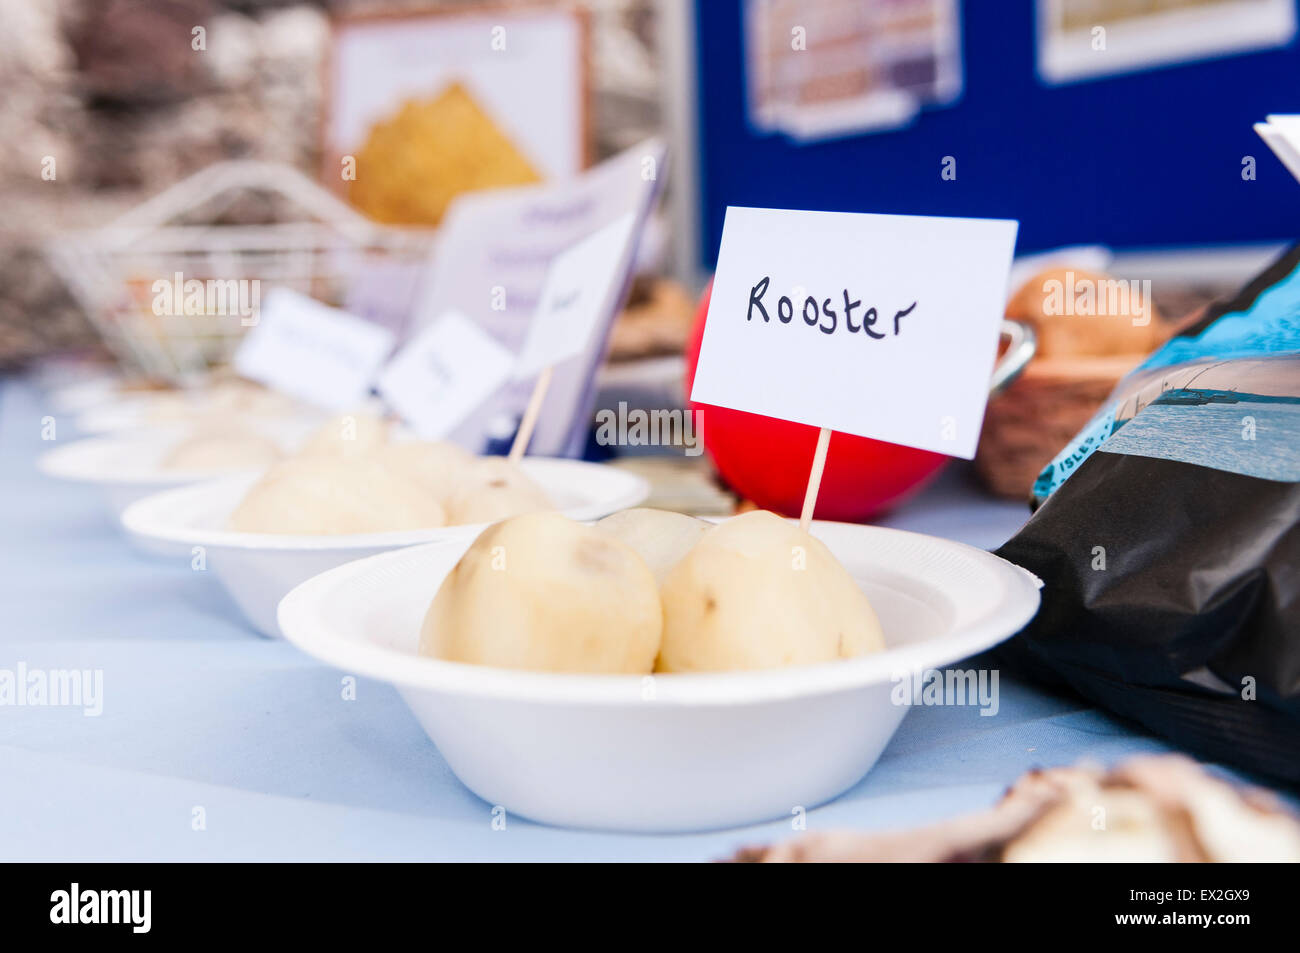 La Rooster patate sul display in un salone del cibo. Foto Stock